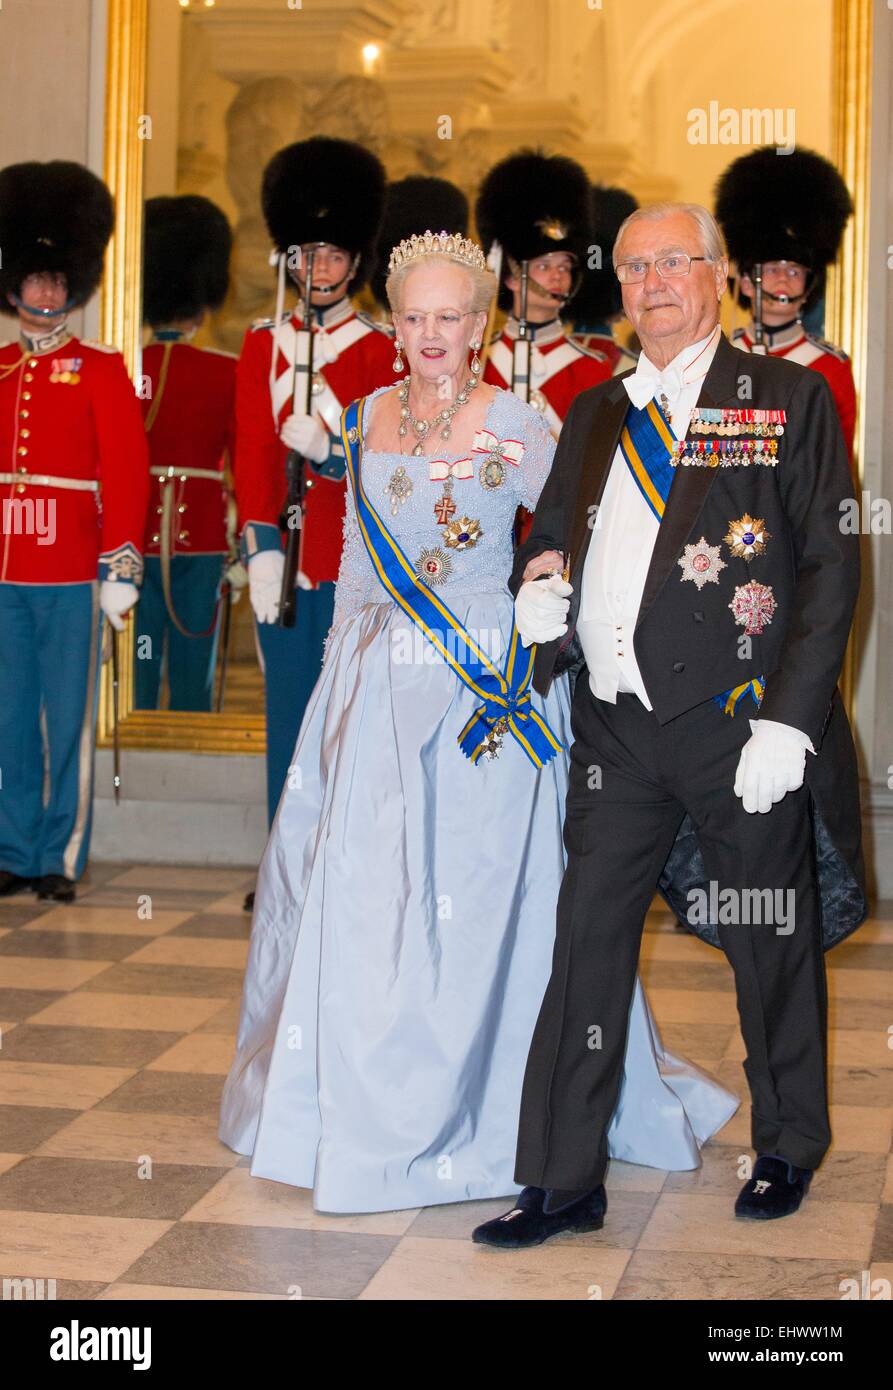 Copenhague, Danemark. Mar 17, 2015. La Reine Margrethe II et le Prince Henrik de Danemark à la banquet d'État au Palais de Christiansborg à Copenhague, Danemark, 17 mars 2015. Roi des Pays-Bas et de la Reine sont au Danemark pour une visite d'Etat de deux jours. Dpa : Crédit photo alliance/Alamy Live News Banque D'Images